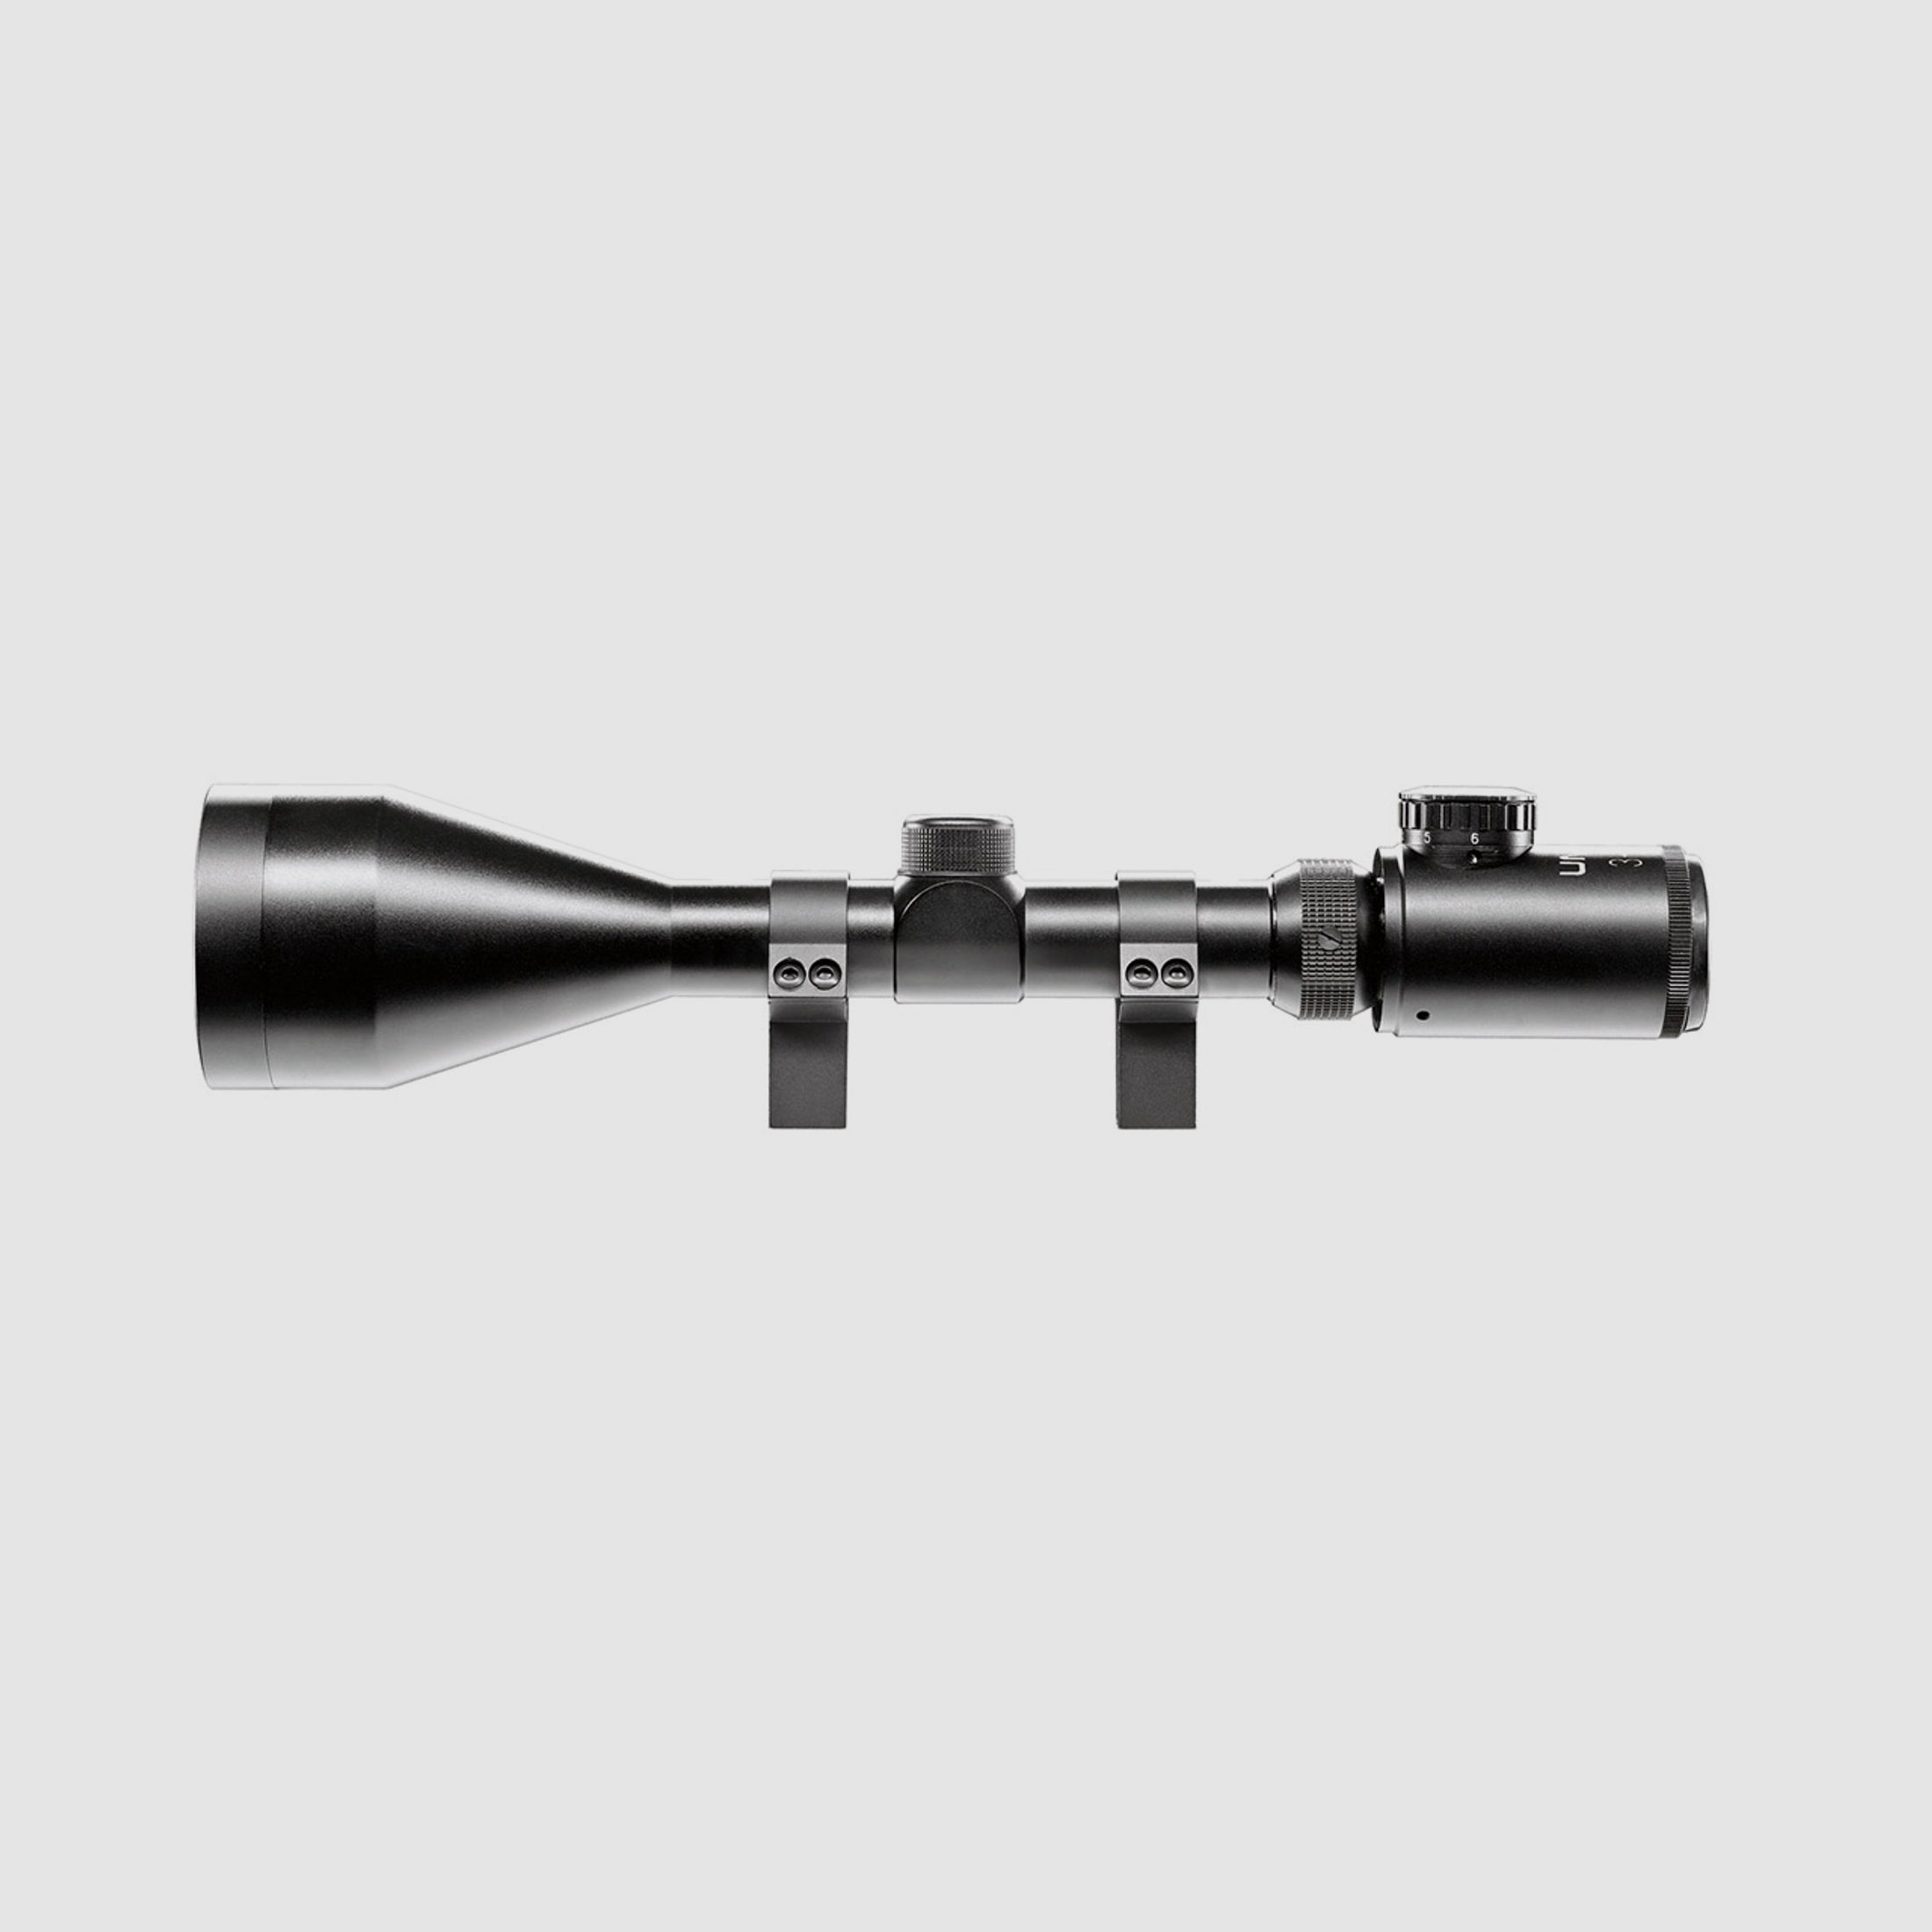 Zielfernrohr Umarex RS 3-9x56 FI Duplex Absehen beleuchtet inklusive Ringmontagen fĂĽr 11 mm Prismenschiene